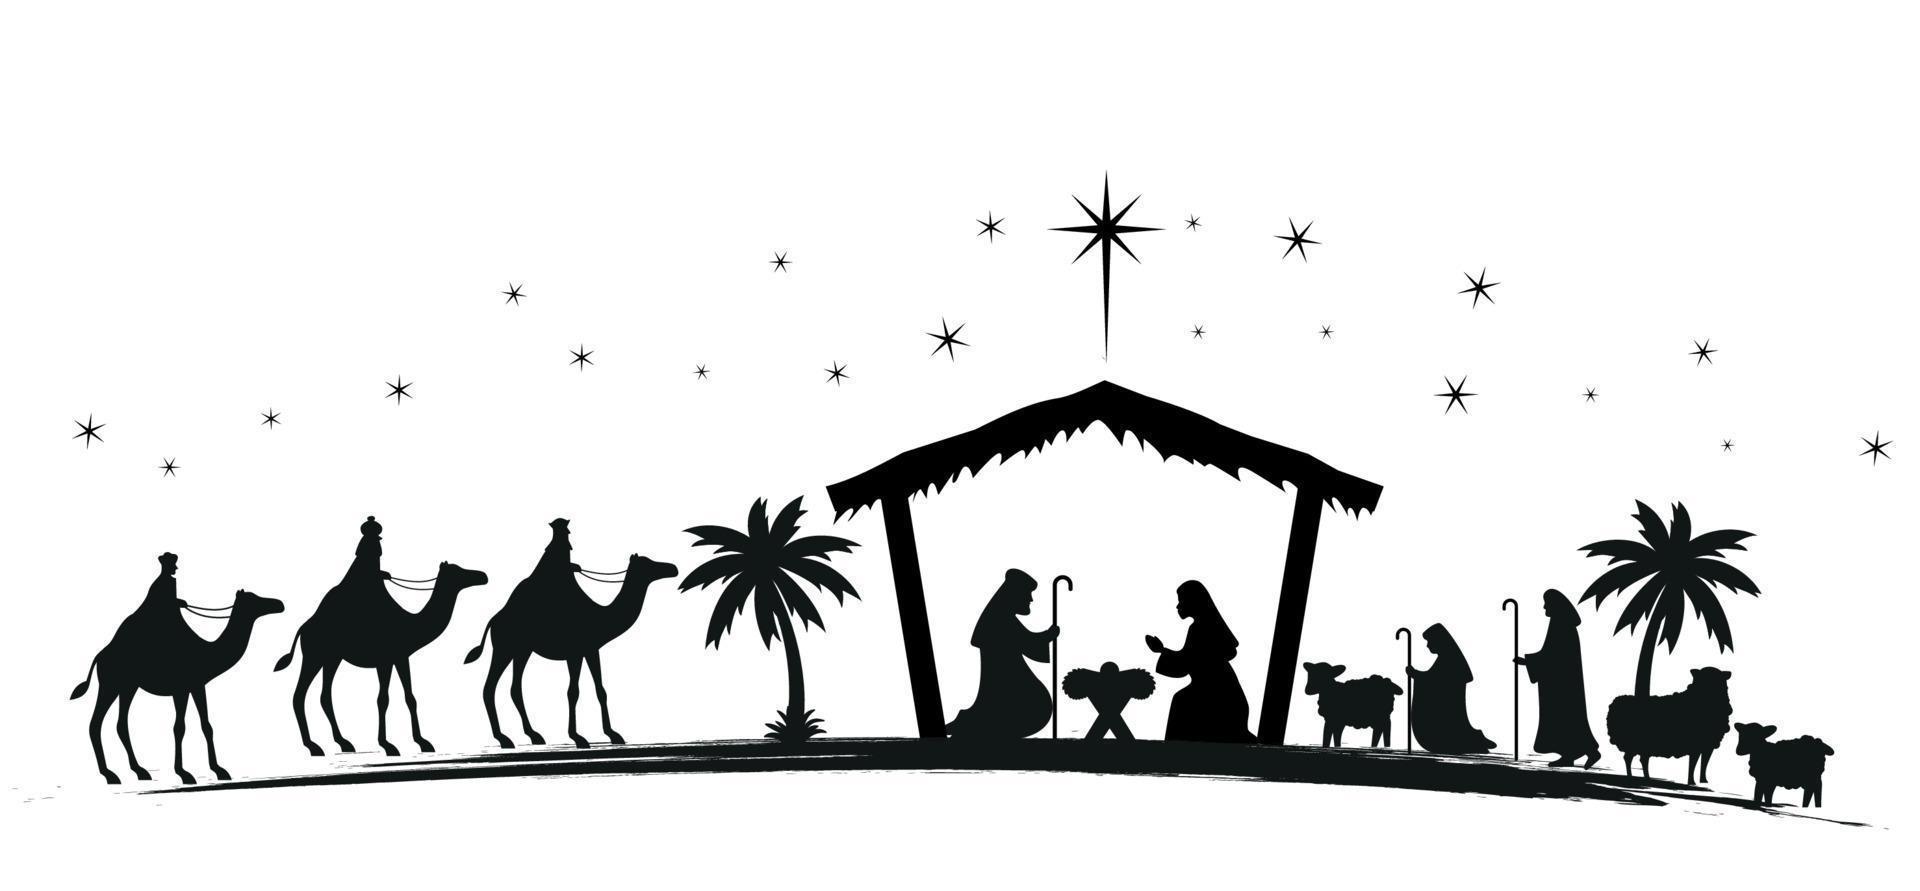 Kerstmis geboorte tafereel met baby Jezus, Maria en Joseph in de kribbe.traditioneel christen Kerstmis verhaal. vector illustratie voor kinderen. eps 10